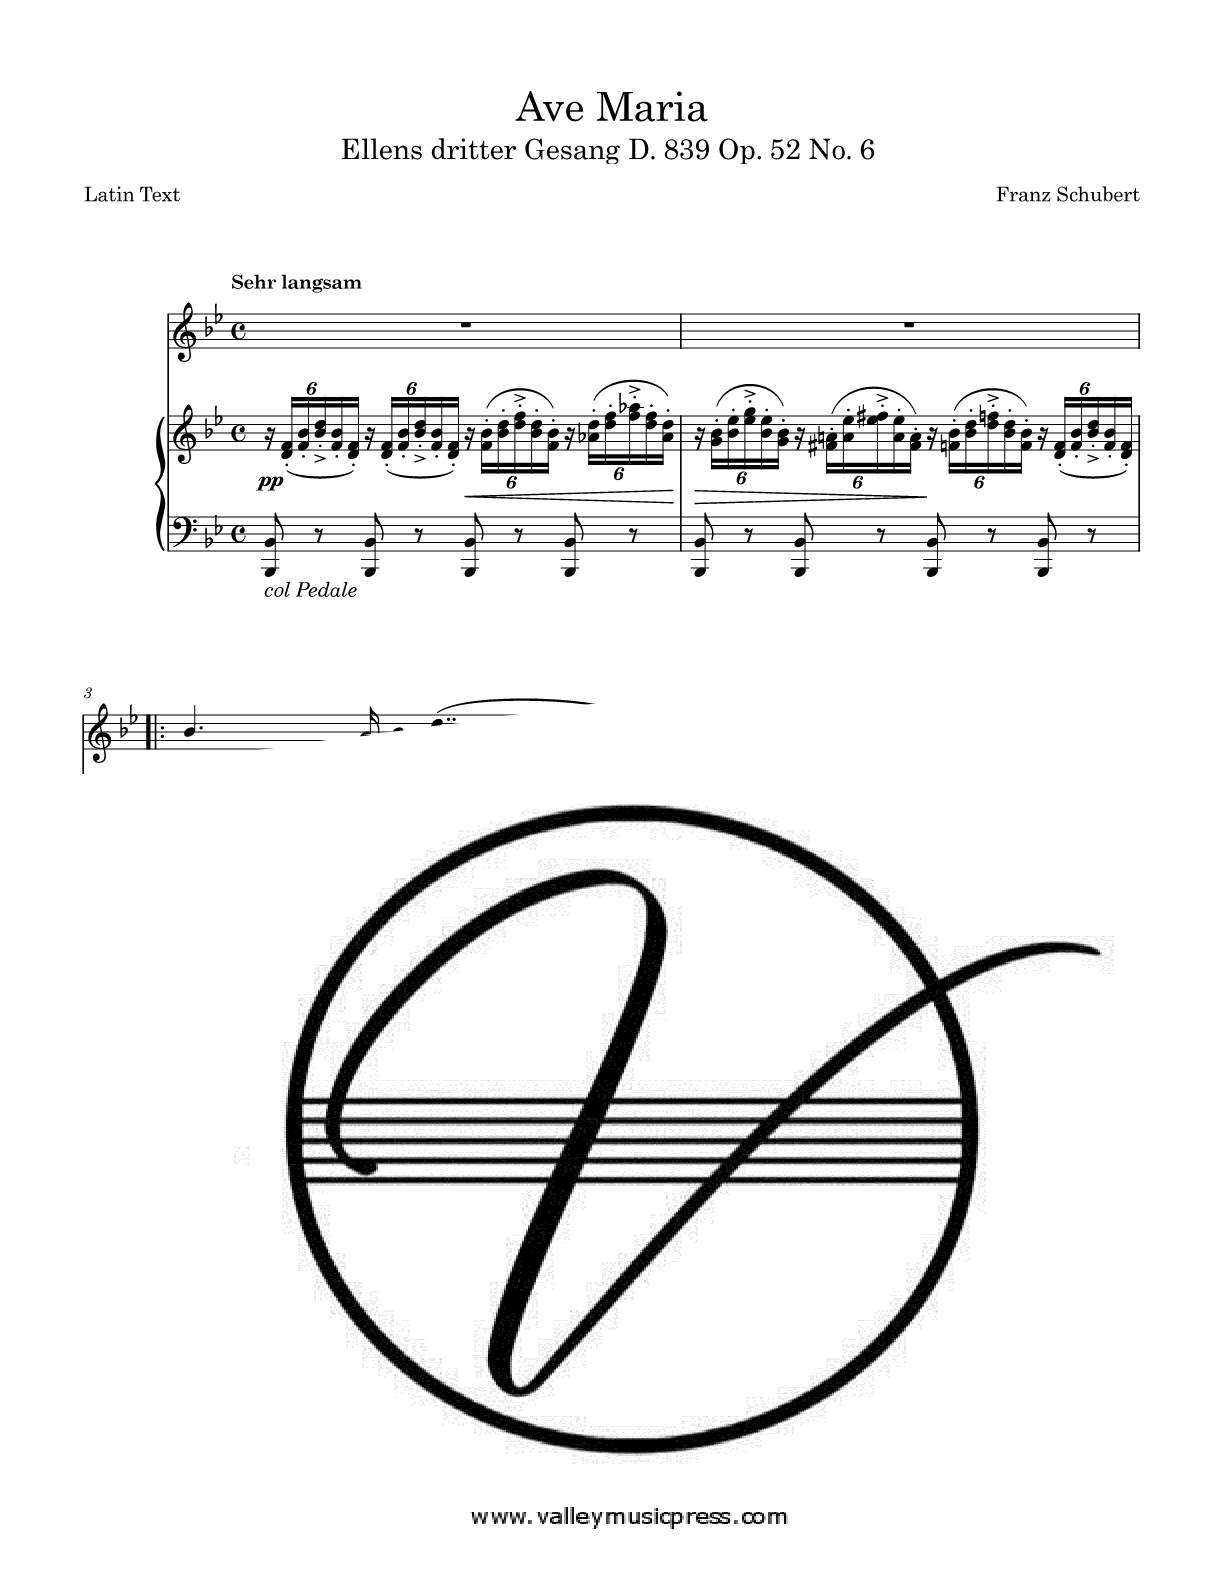 Schubert - Ave Maria D. 839 Op. 52 No. 6 Latin Text (Voice) - Click Image to Close